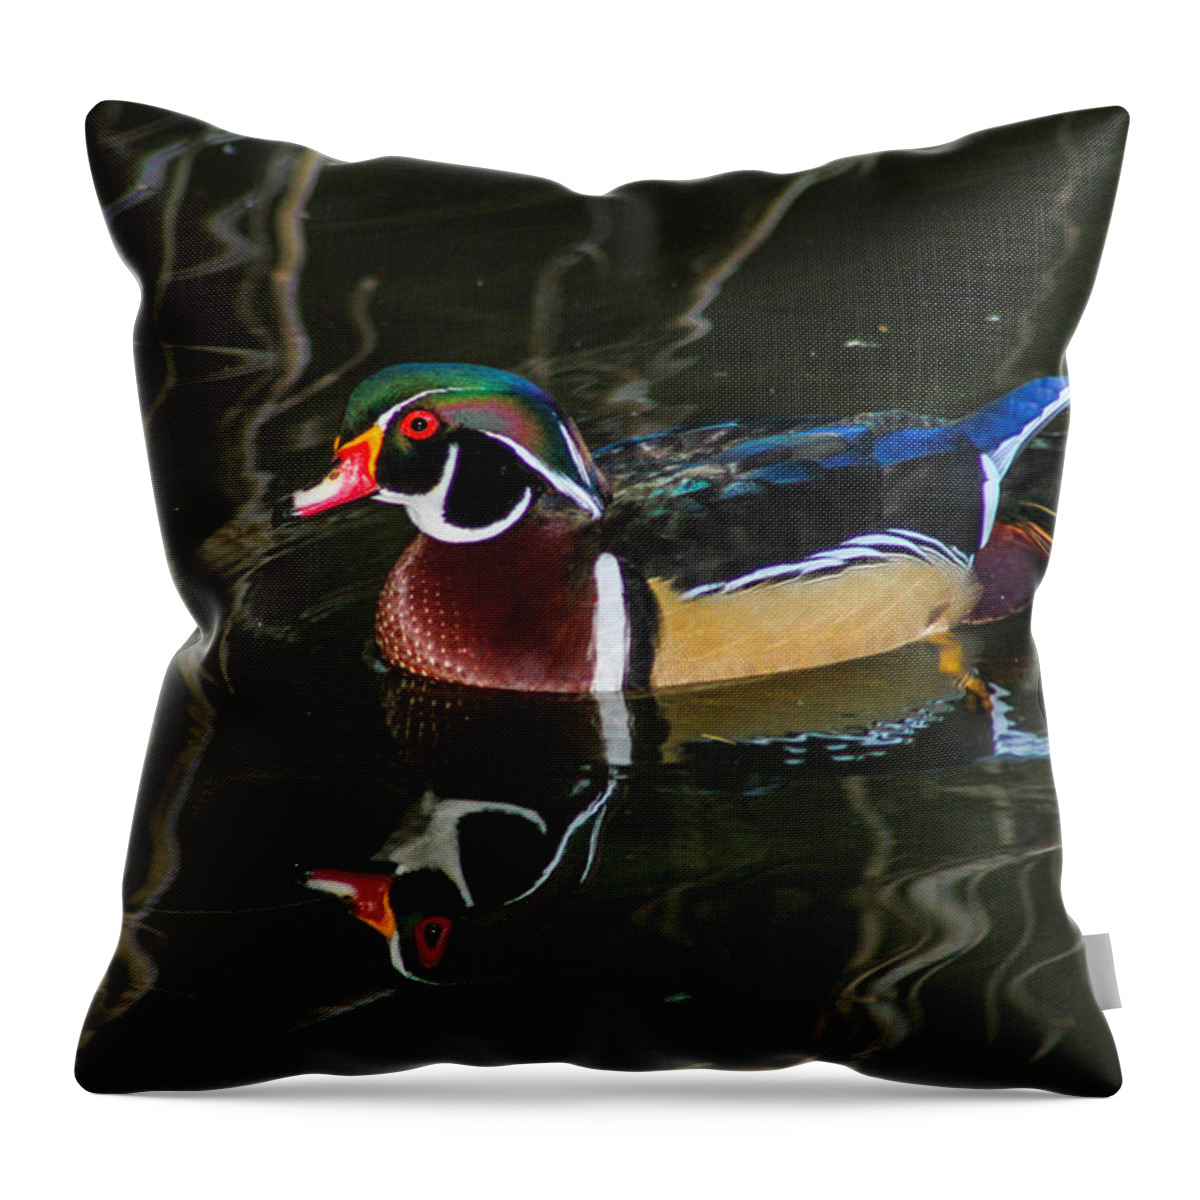 Duck Throw Pillow featuring the photograph Wood Duck Reflections by Robert Hebert